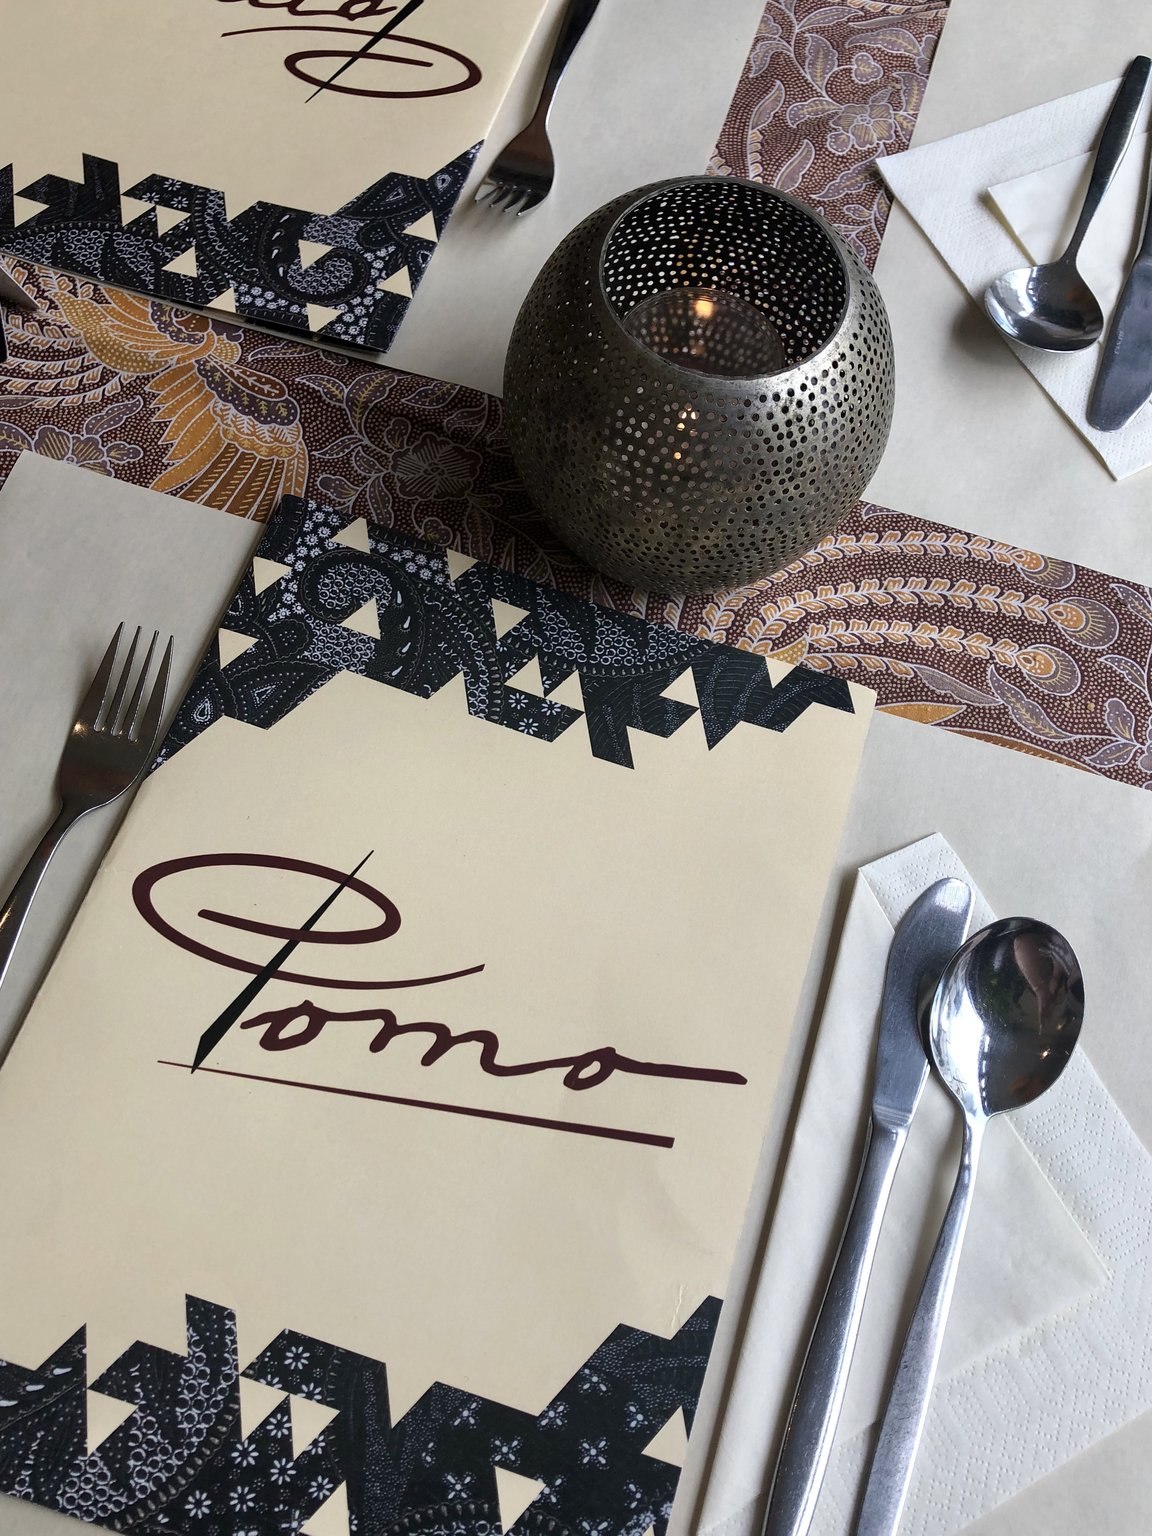 Restaurant Pomo